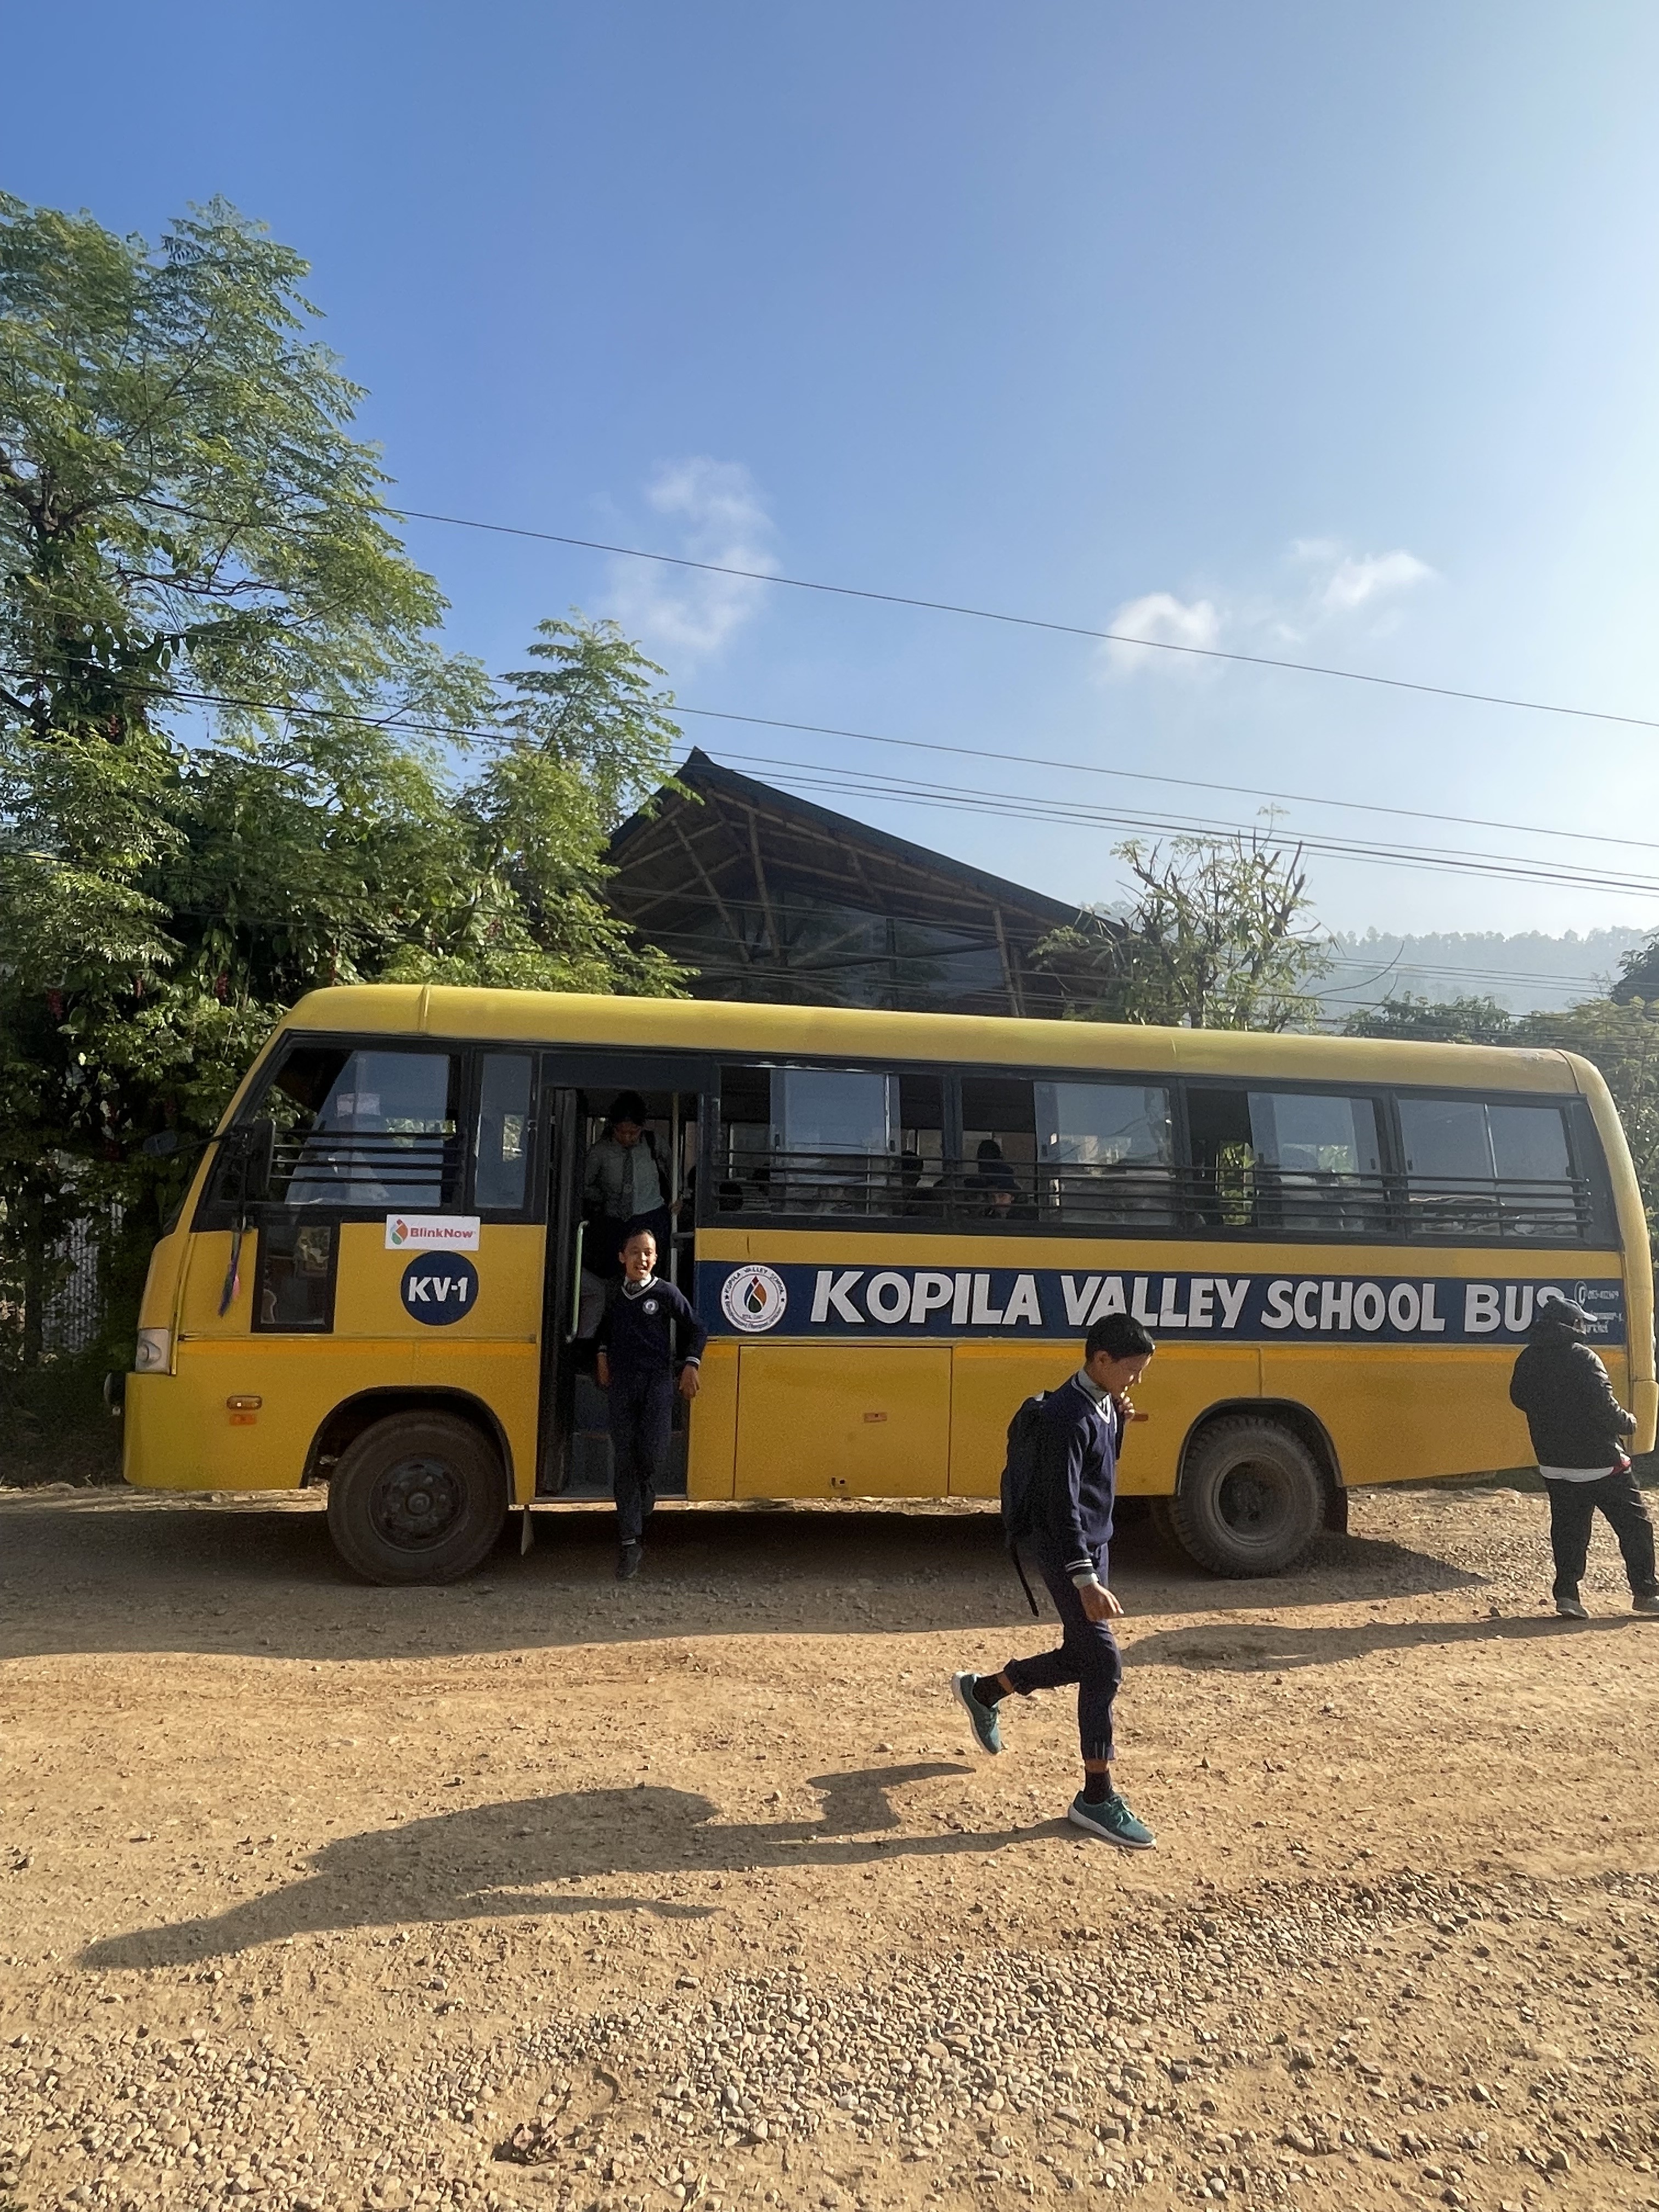 Children get off the Kopila Valley School bus.